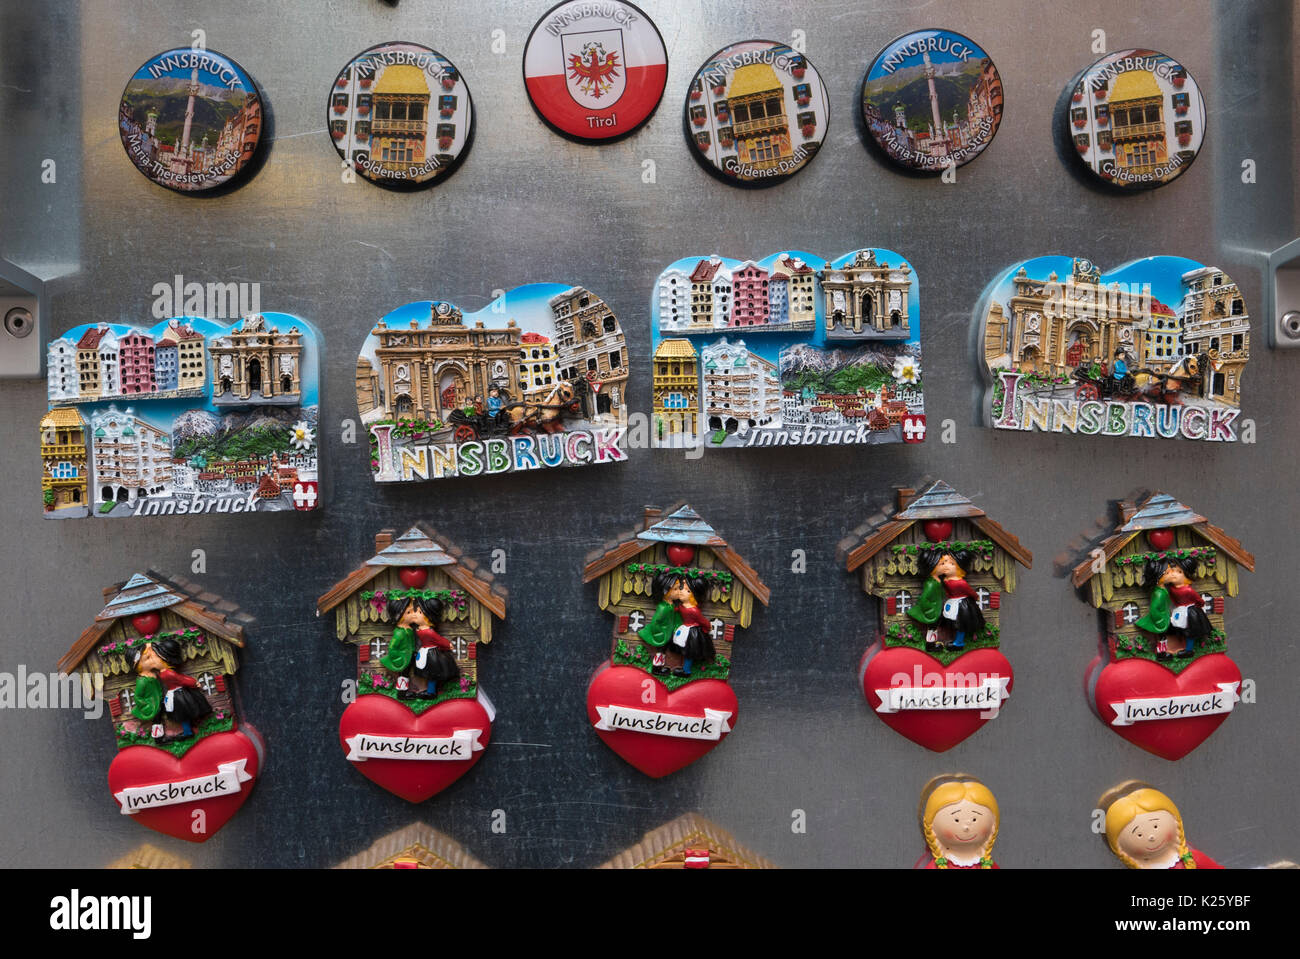 Kühlschrank Magnete auf Verkauf, Innsbruck, Österreich Stockfotografie -  Alamy